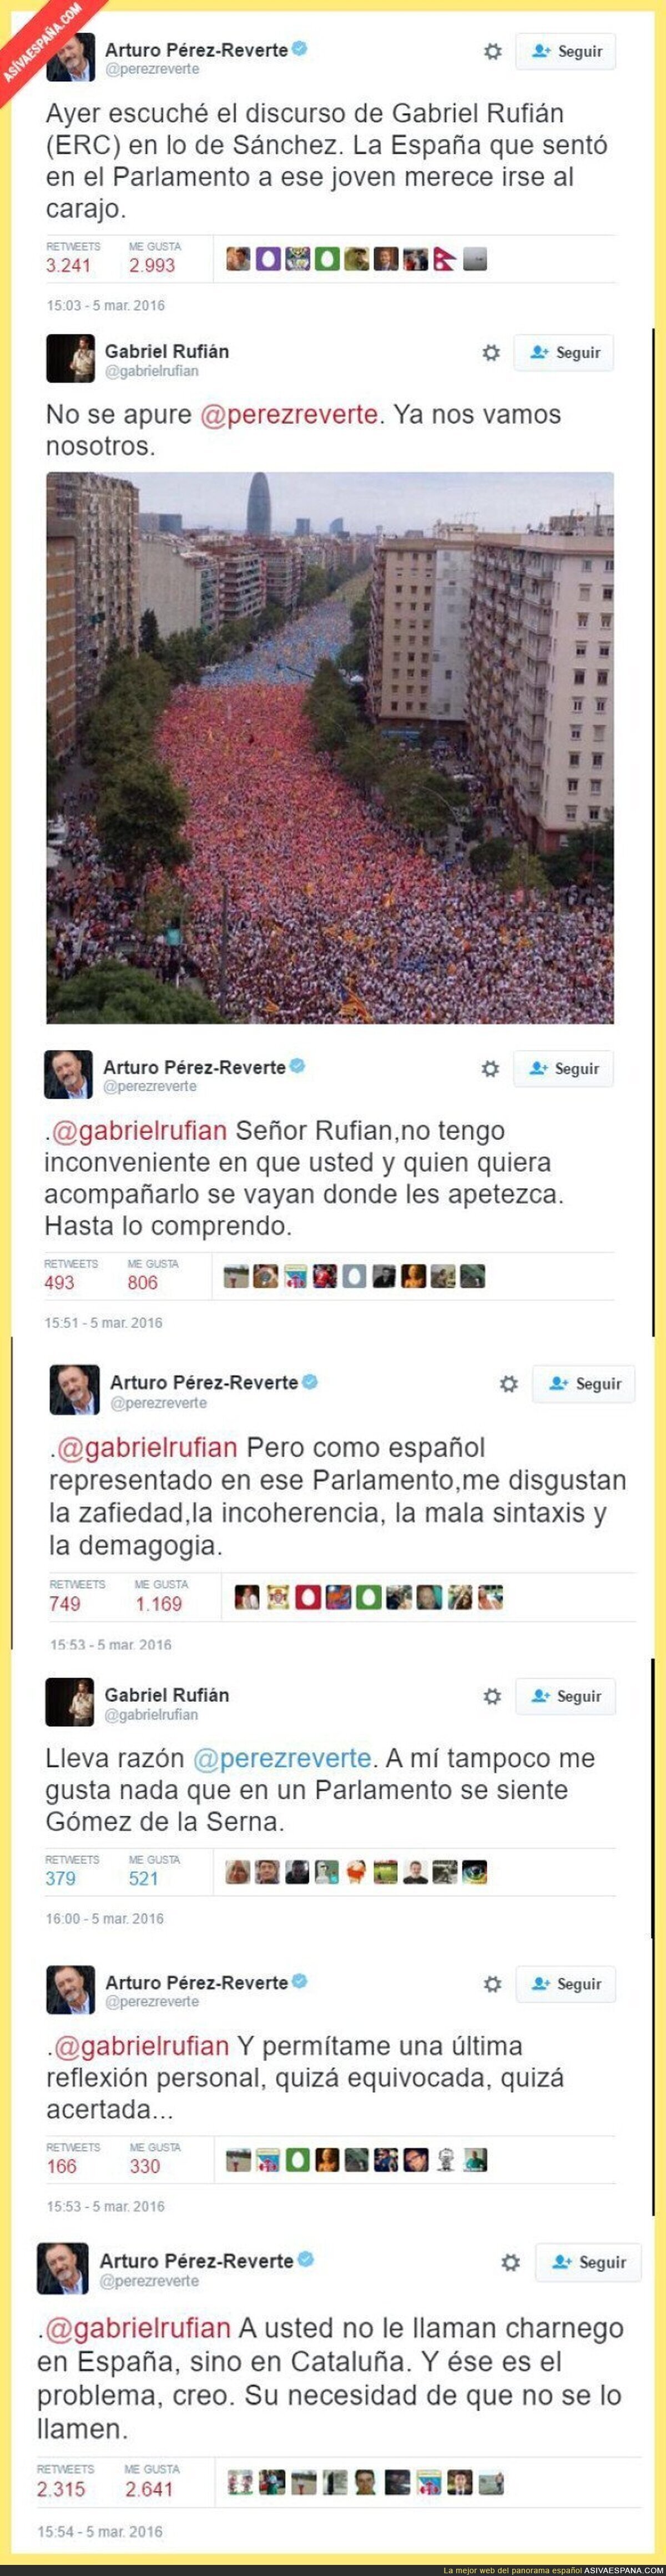 La pelea tuitera entre Arturo Pérez Reverte y Gabriel Rufián (ERC)